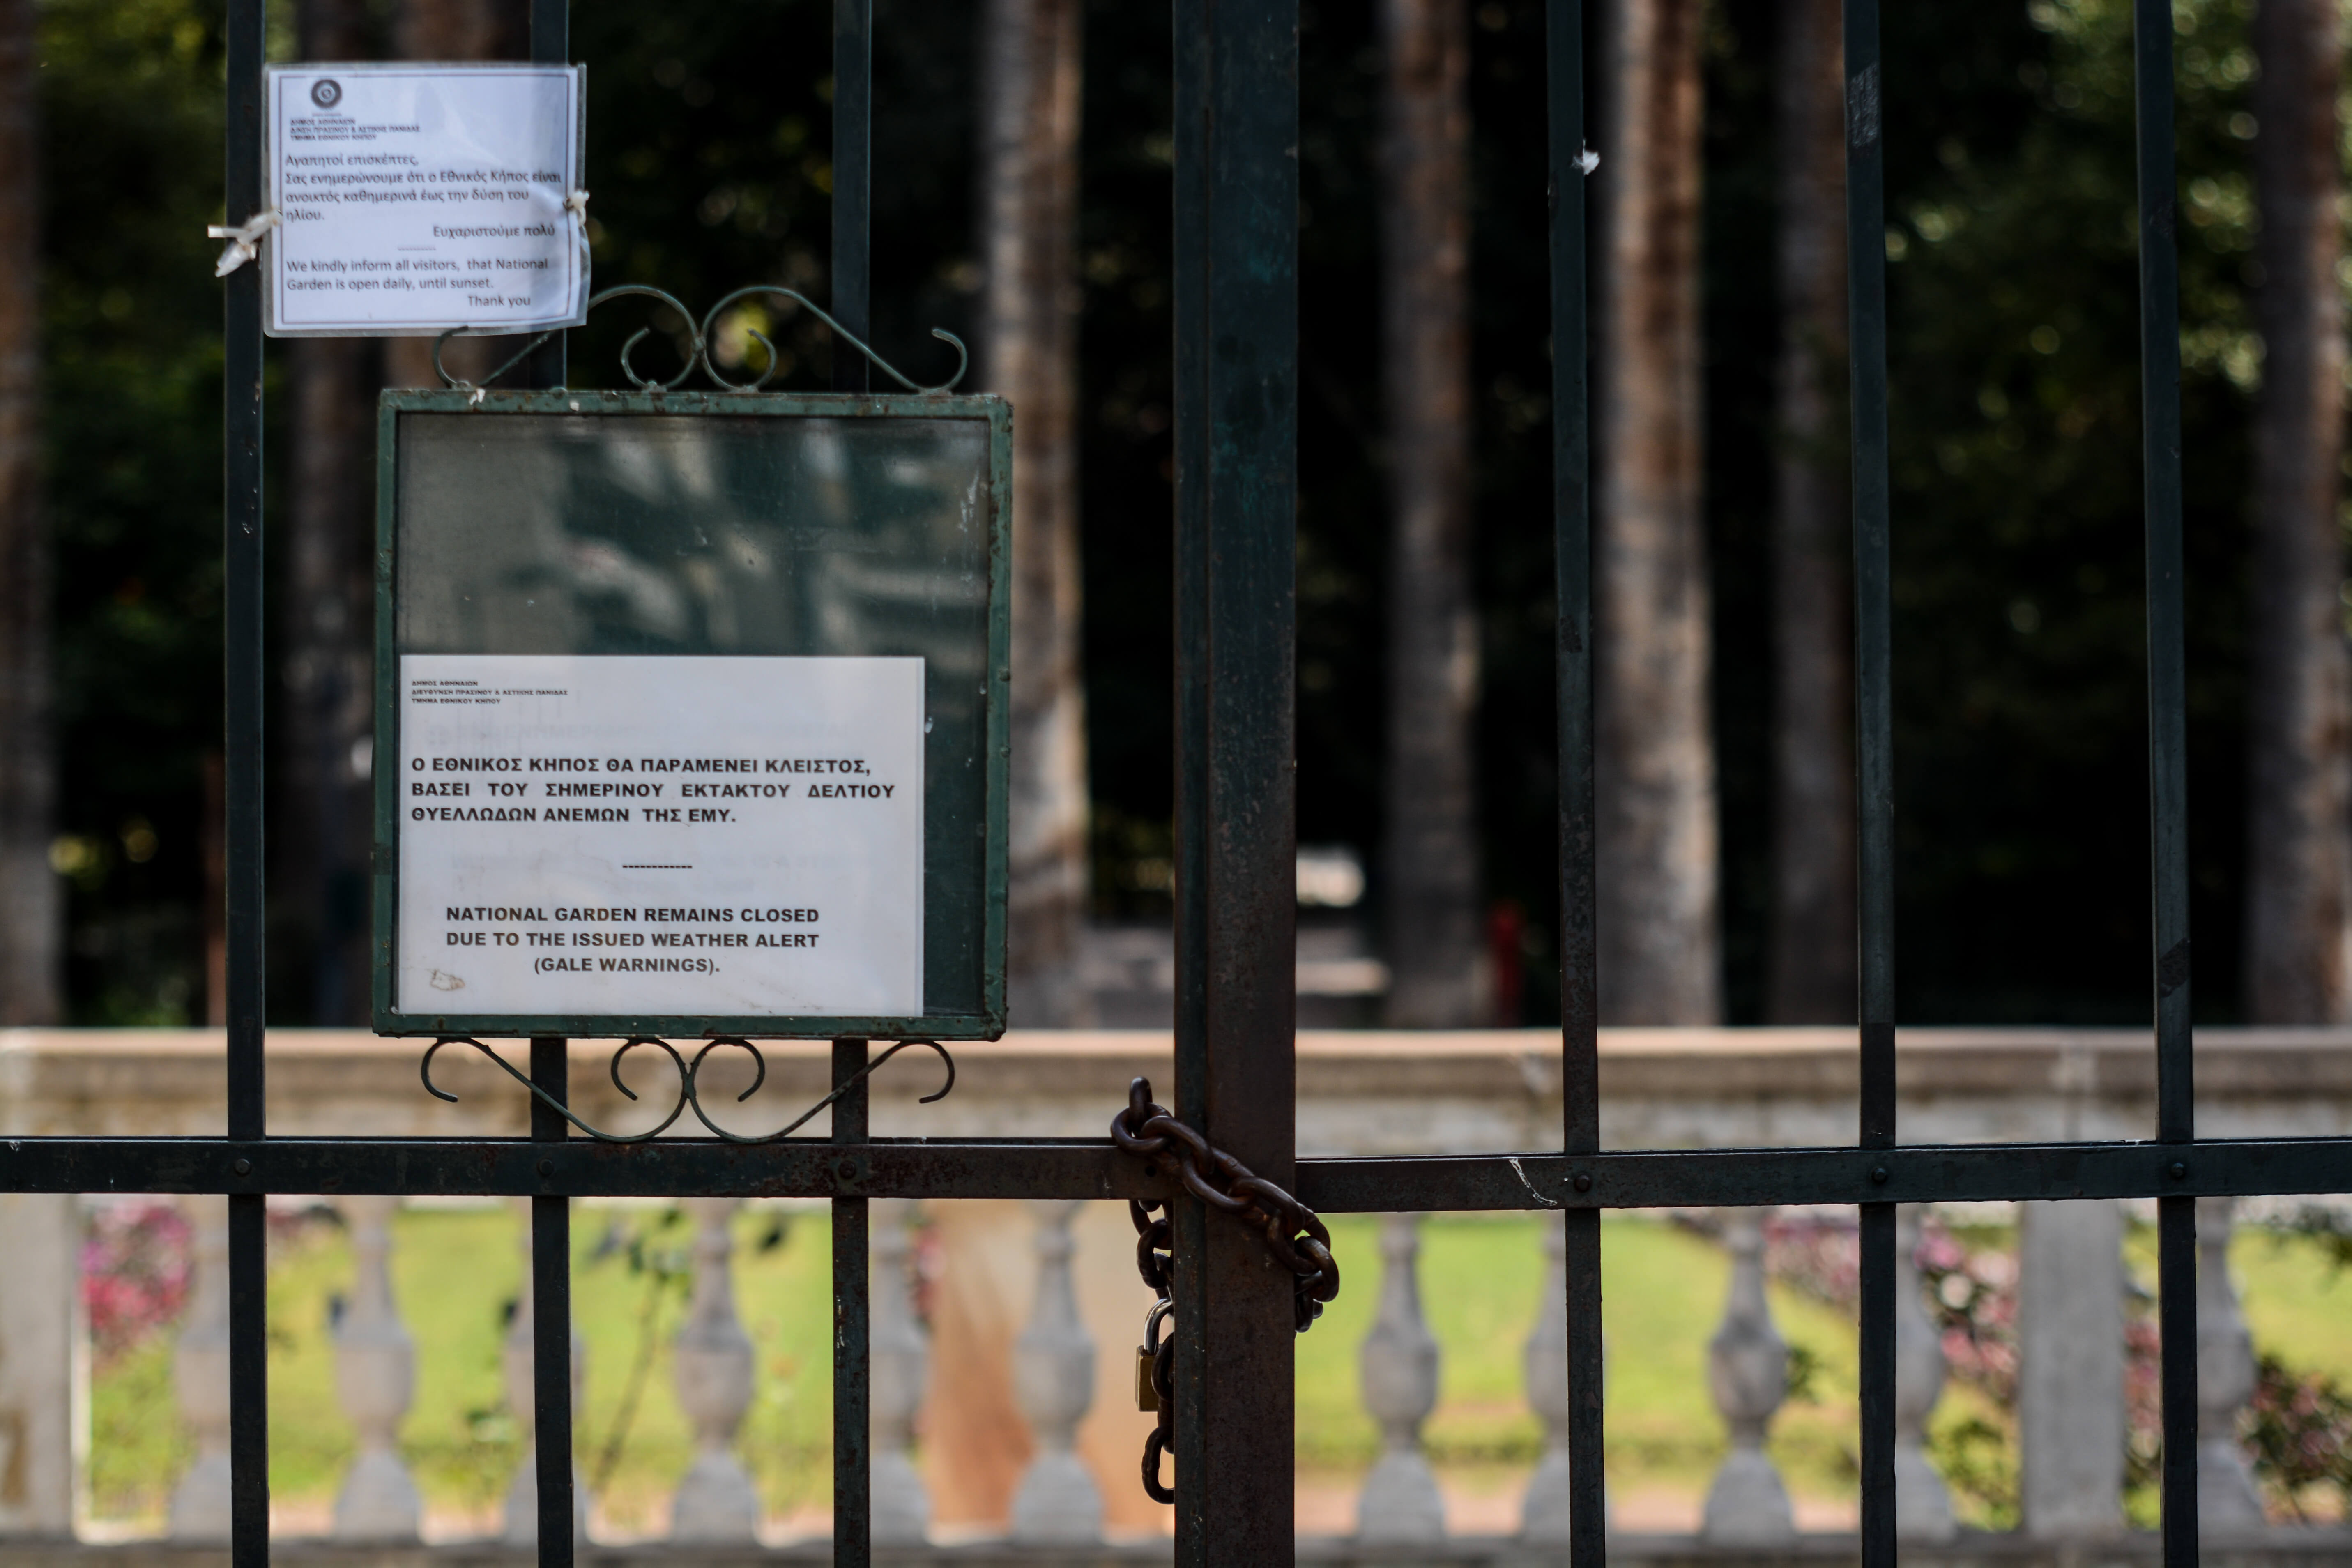 Καιρός: Κλειστός και ο Εθνικός Κήπος λόγω των θυελλωδών ανέμων! [pics]